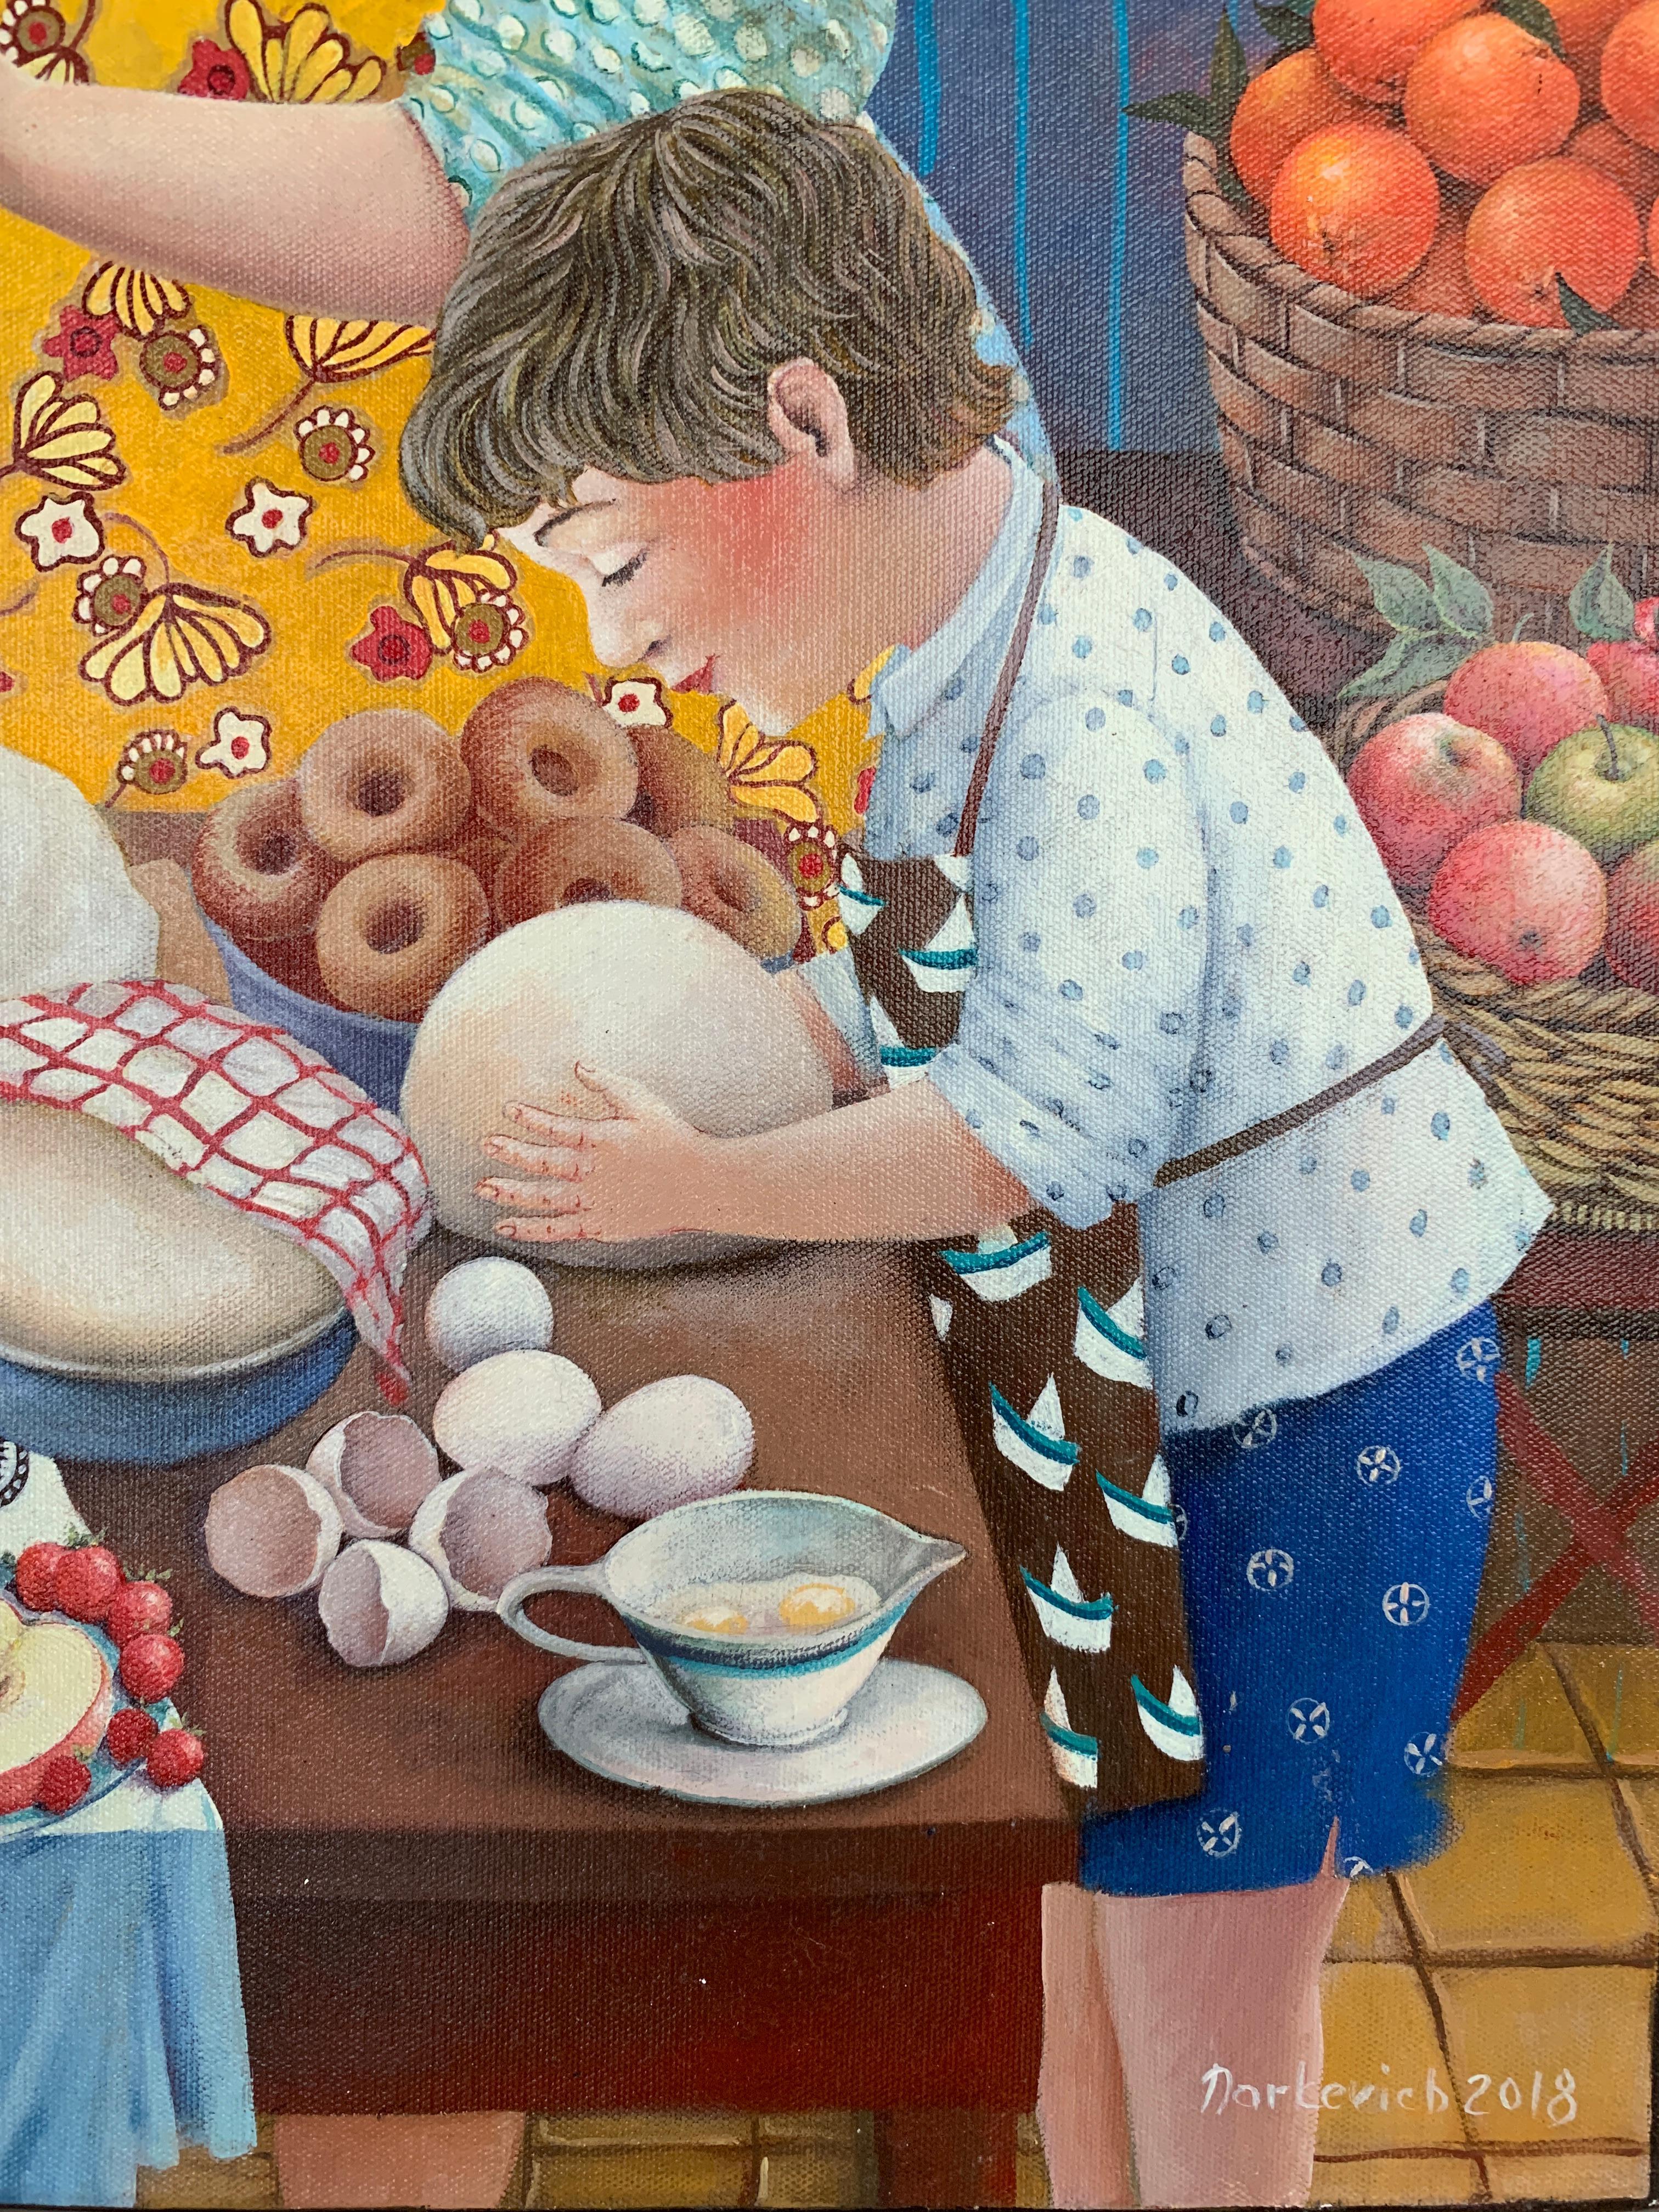 Morning smells-morning, die Routine des Brotes und der Vorspeisenbraunen – Painting von Elena Narkevich